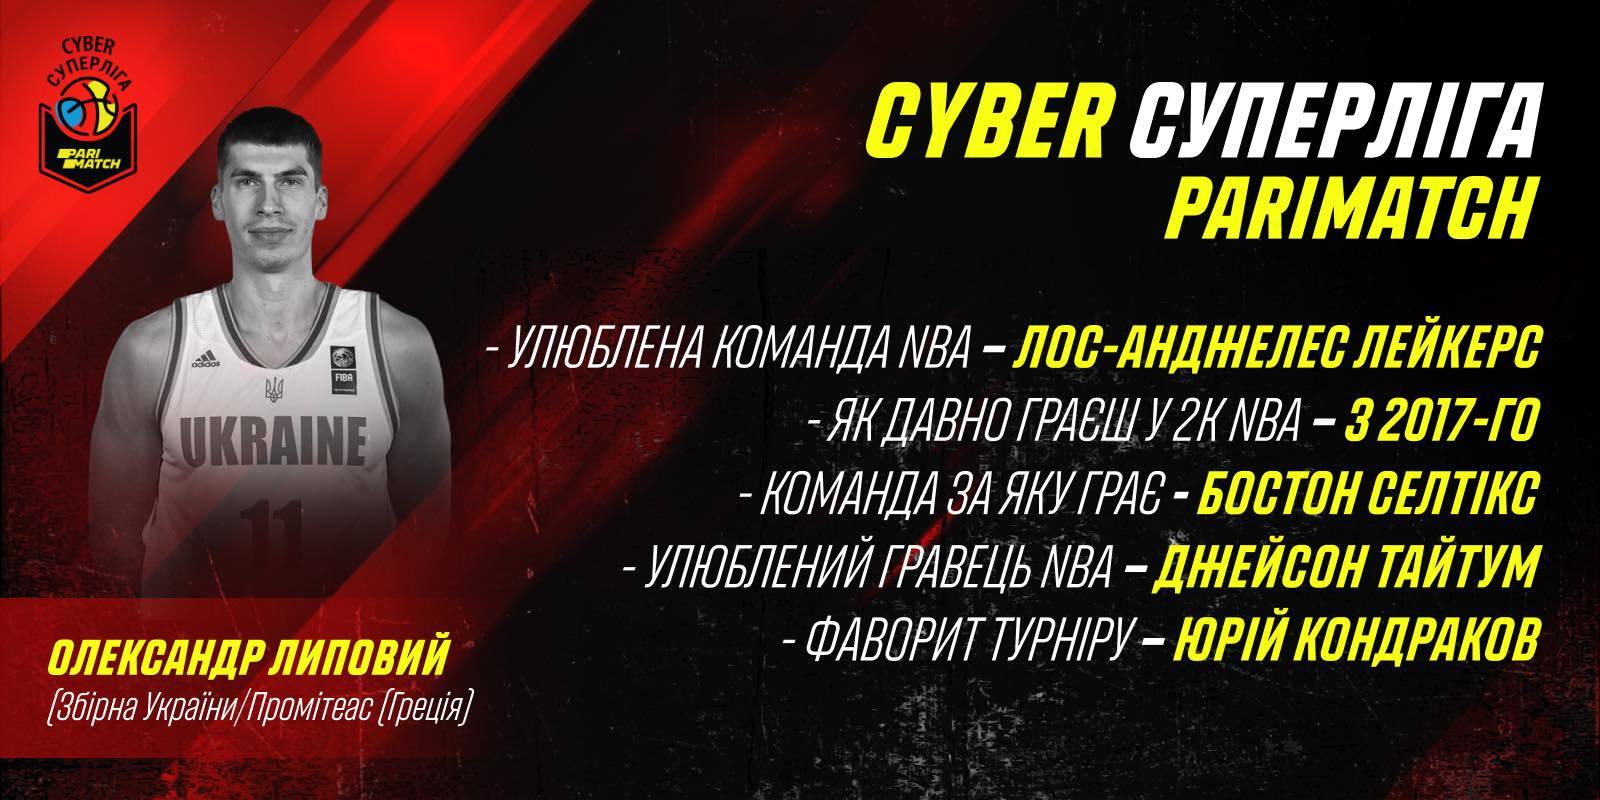 Олександр Липовий: у мене є спортивний інтерес — хочу виграти Cyber Суперлігу Парі-Матч